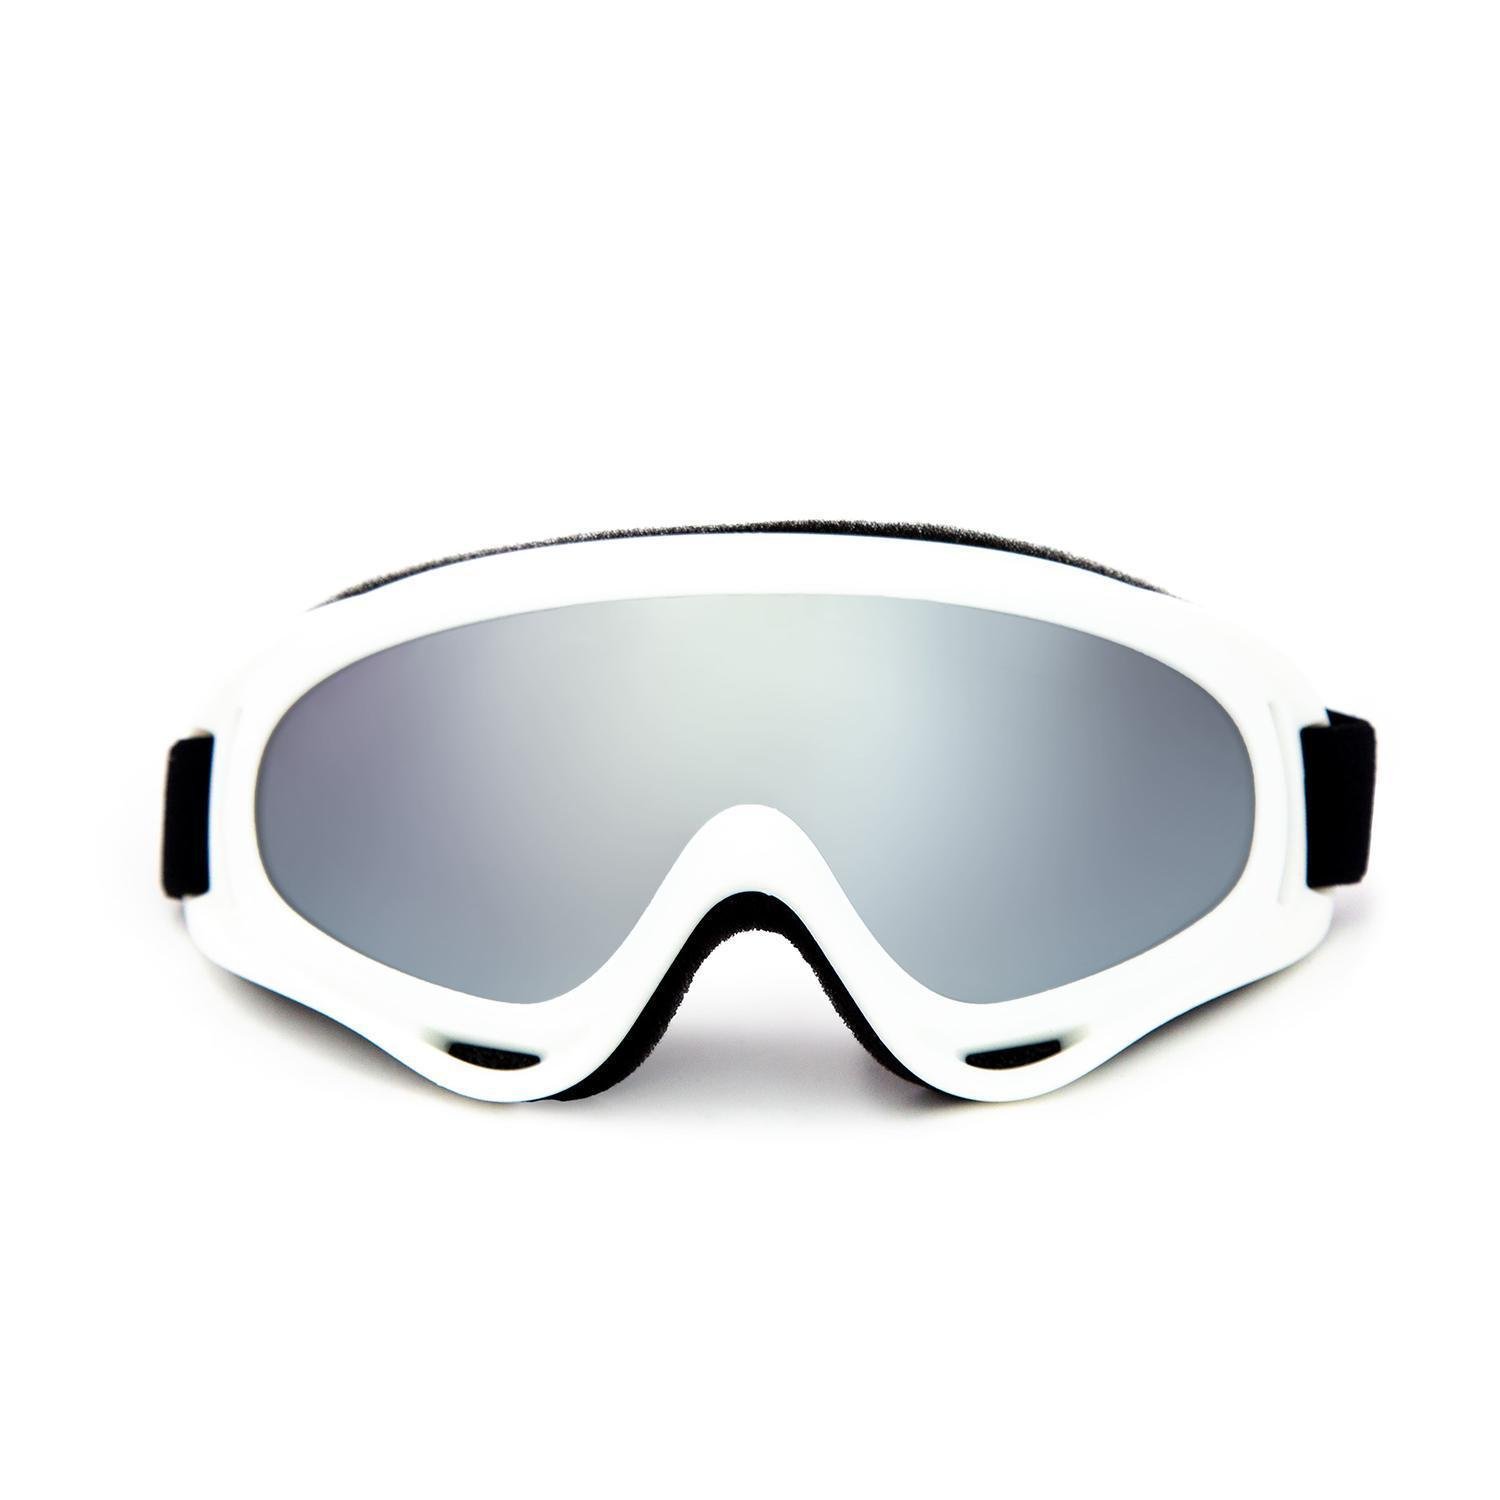 Óculos Snowboard Branco Enduro com Lente Espelhada Jet Ski - 1